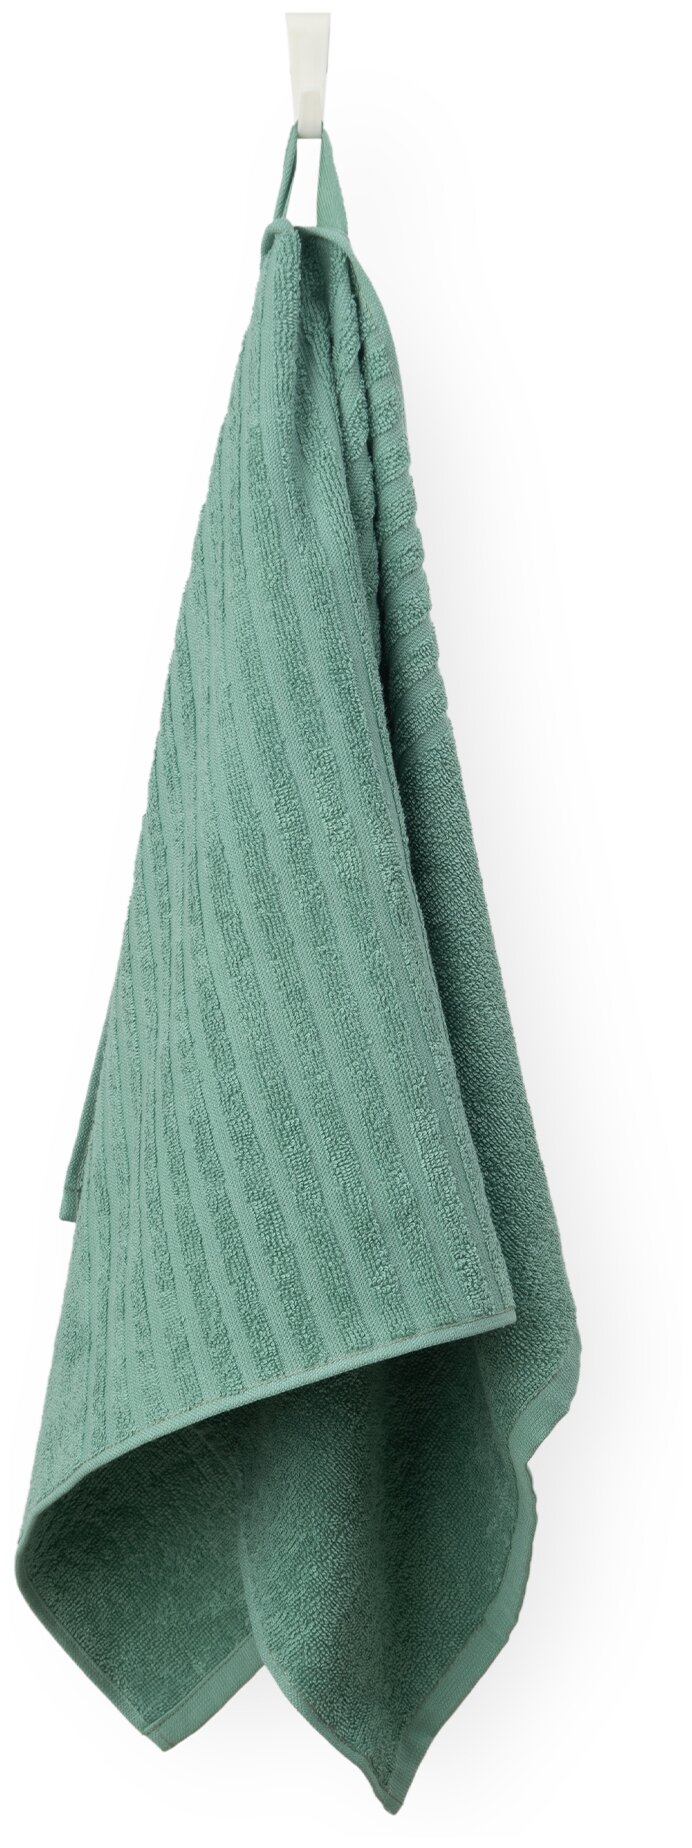 Полотенце махровое для лица и рук, Донецкая мануфактура, 50Х100см, цвет:зеленая камея, 100% хлопок - фотография № 1